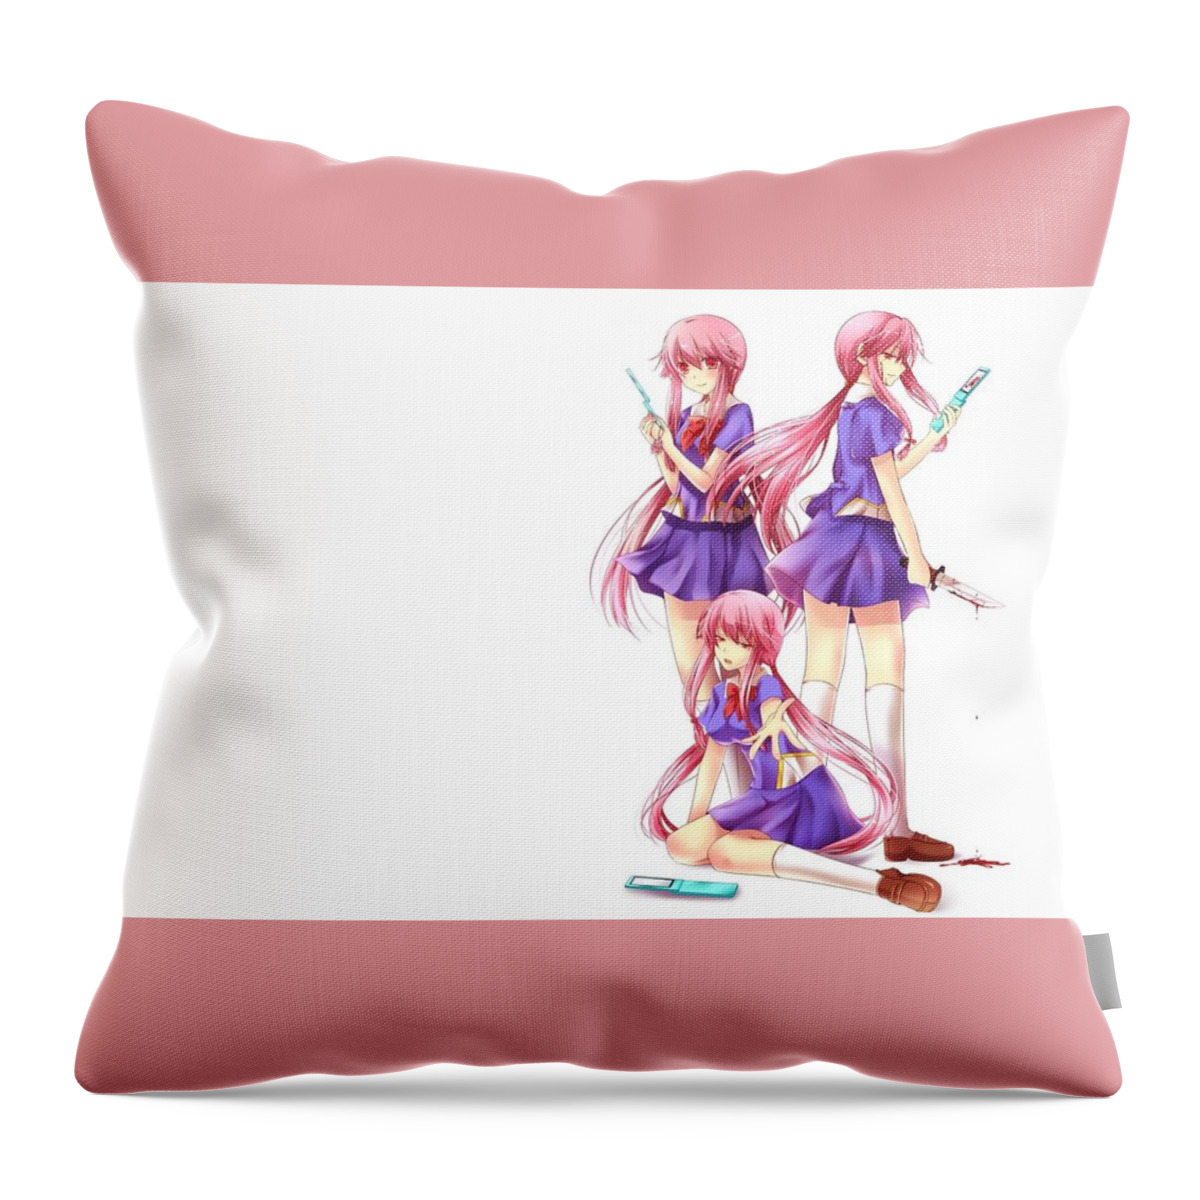 Mirai Nikki Throw Pillow featuring the digital art Mirai Nikki #3 by Super Lovely